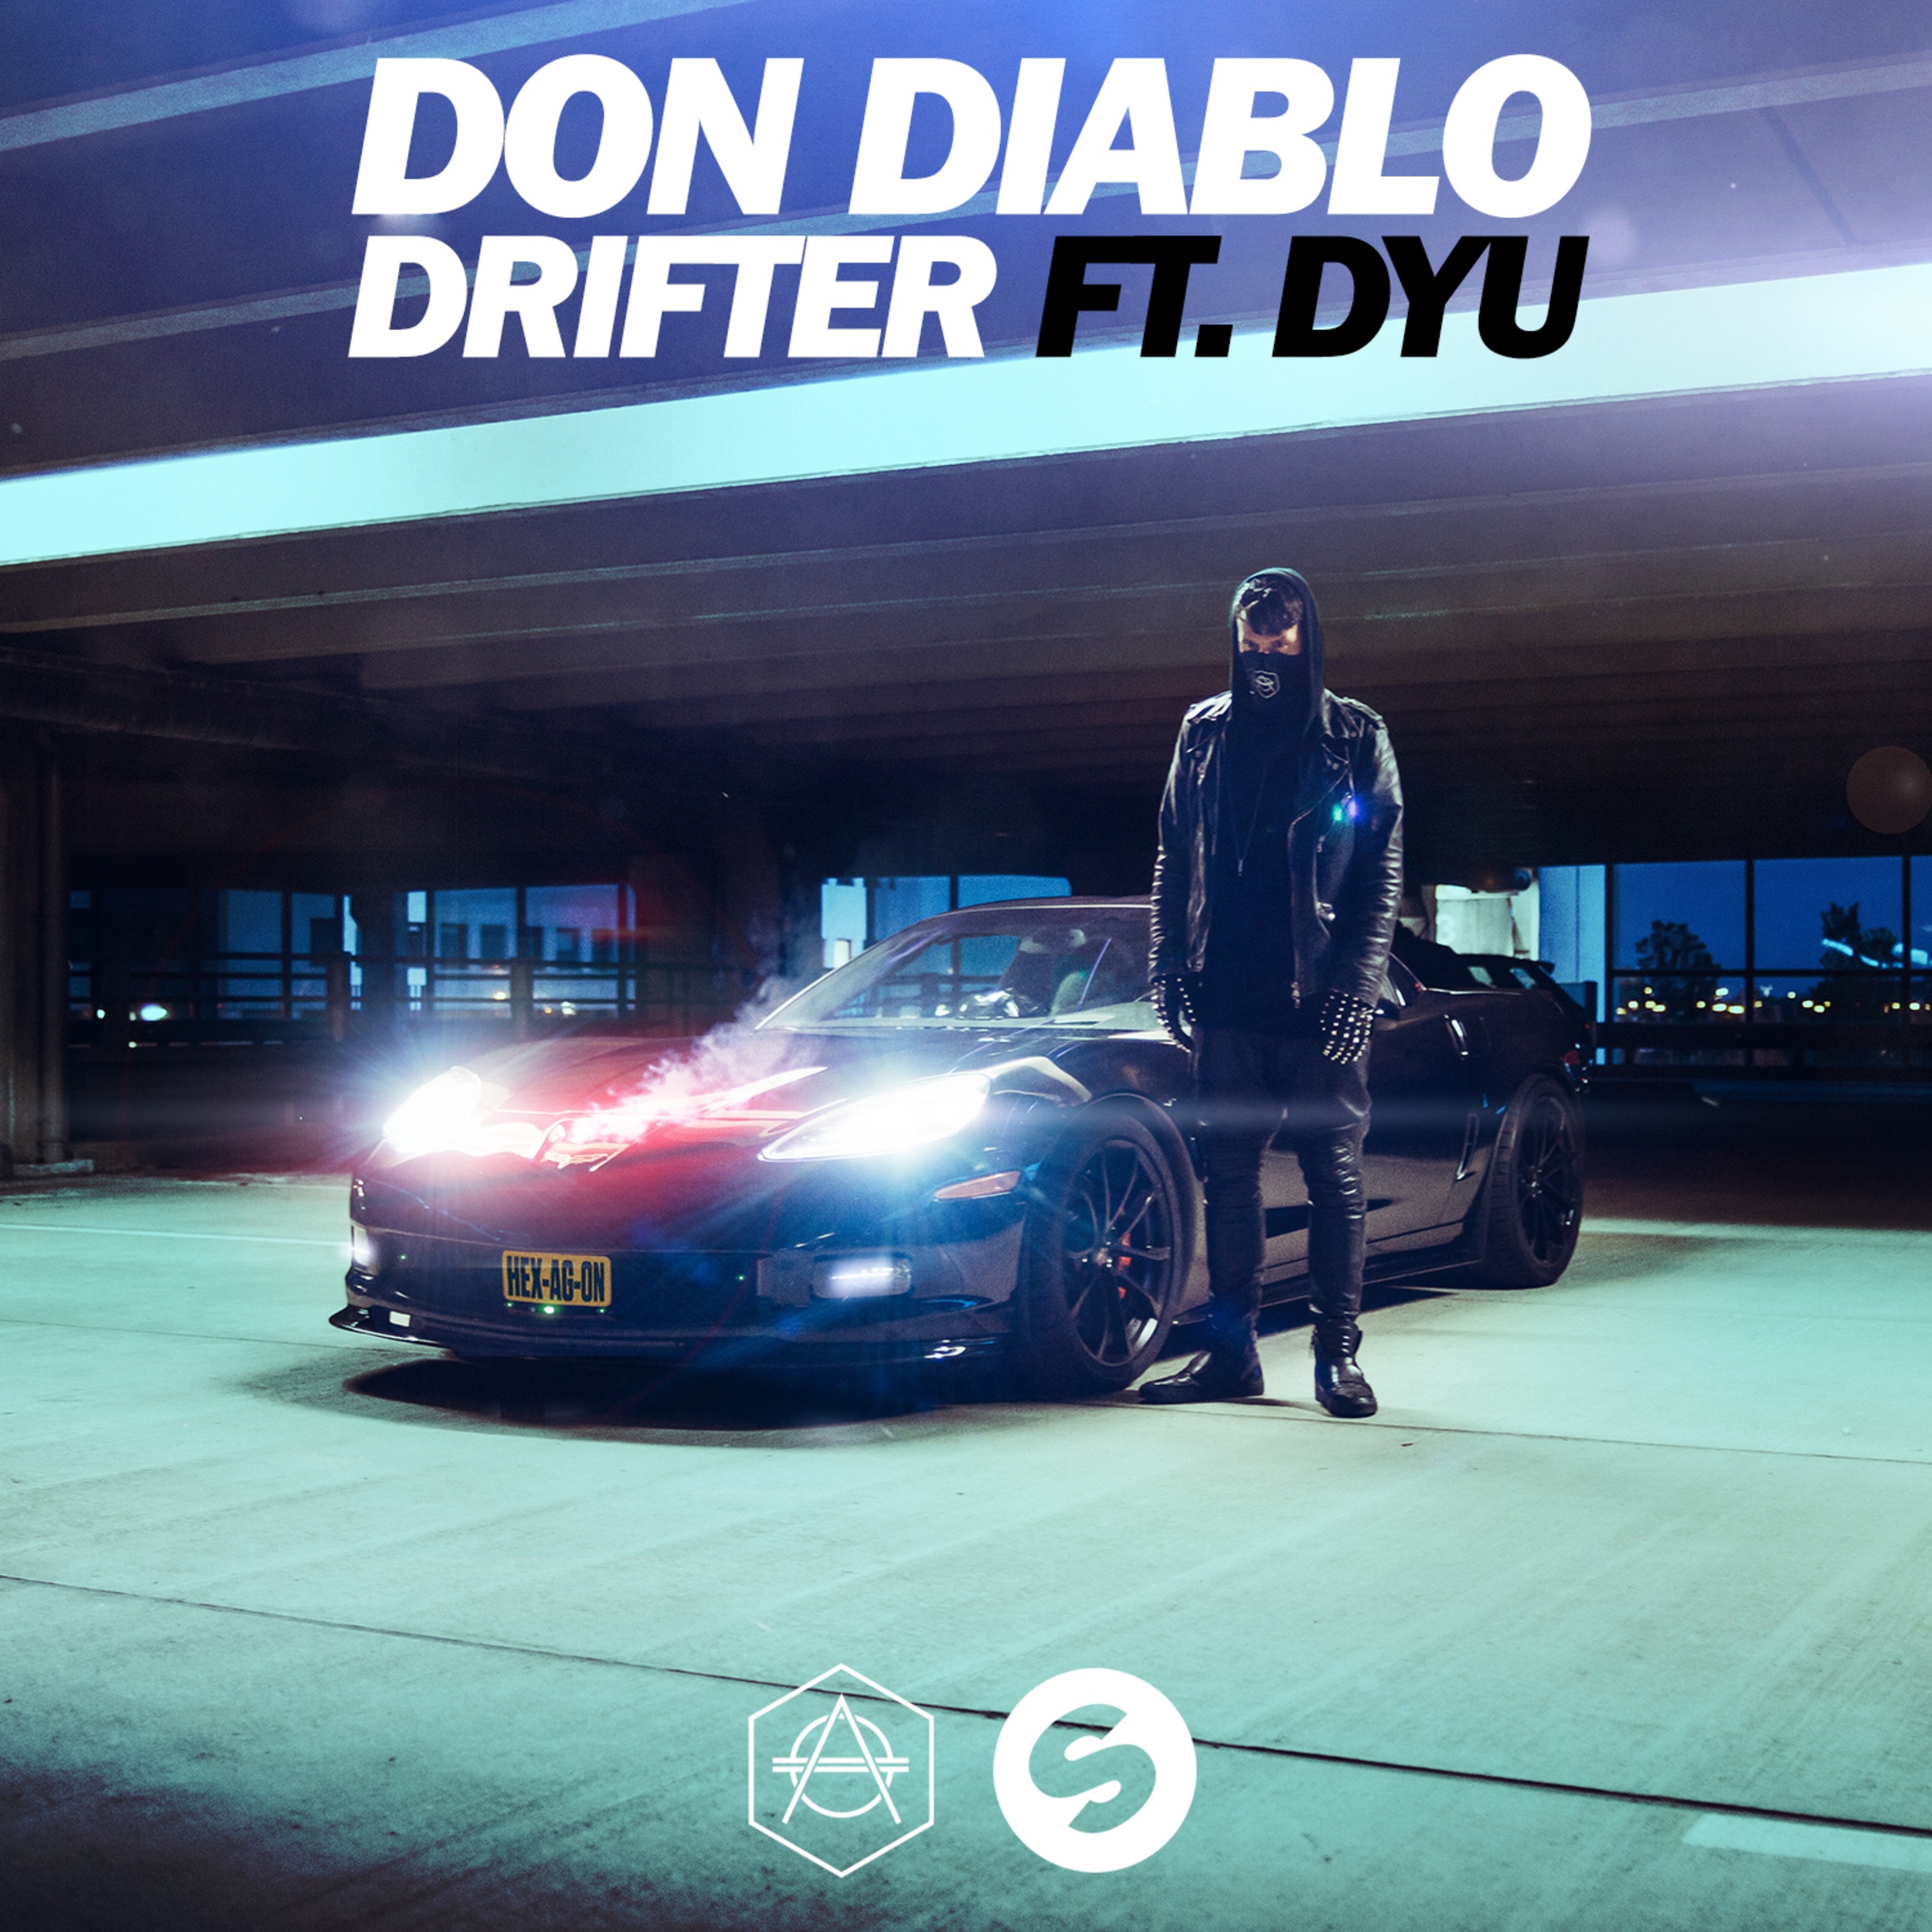 Drifter (Original Mix)